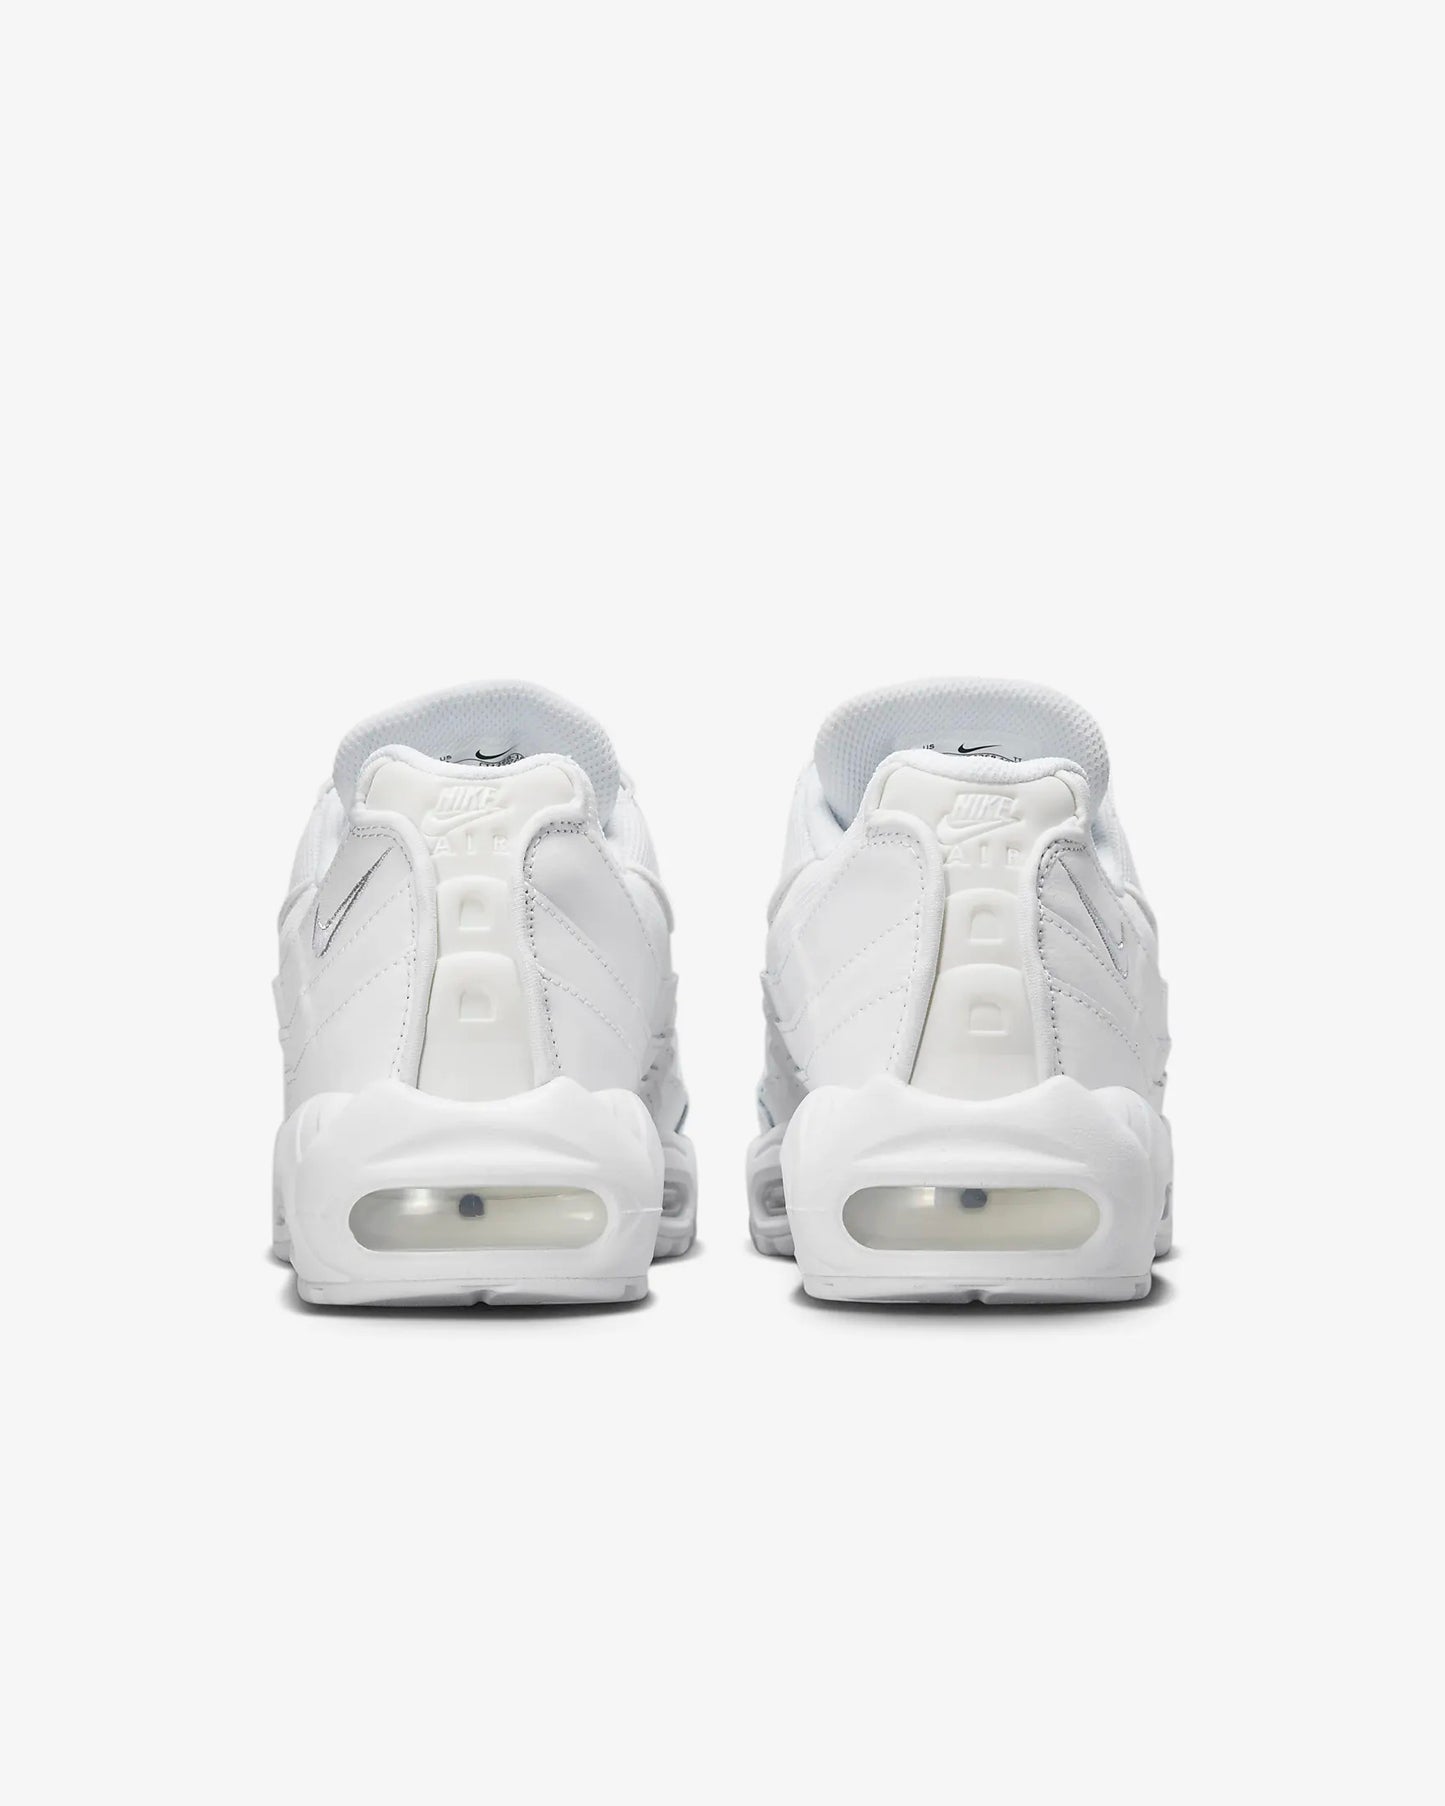 Nike - Air Max 95 - Essential White